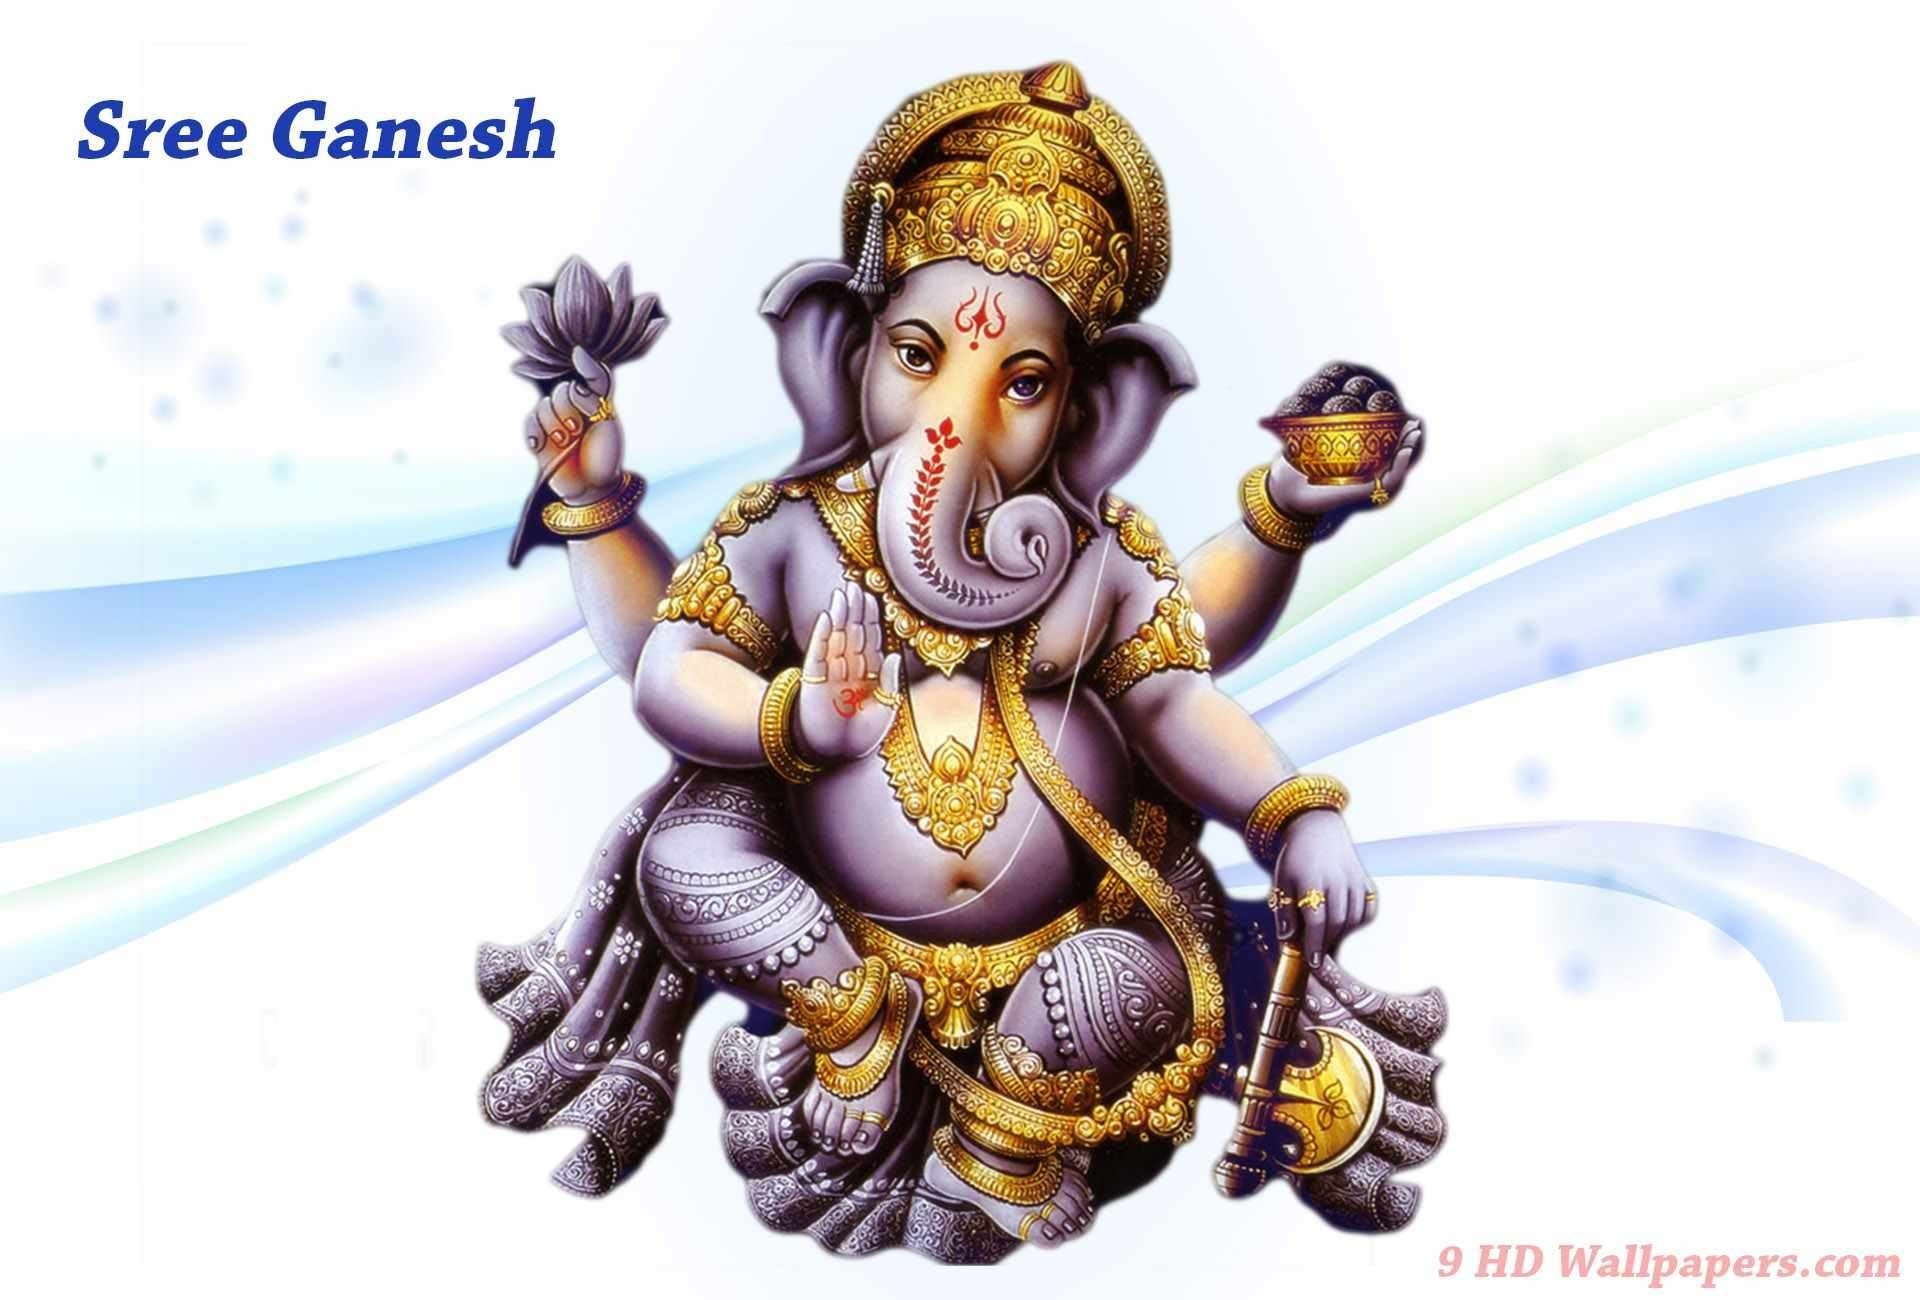 Shri Ganesh - Ganesh Jayanti